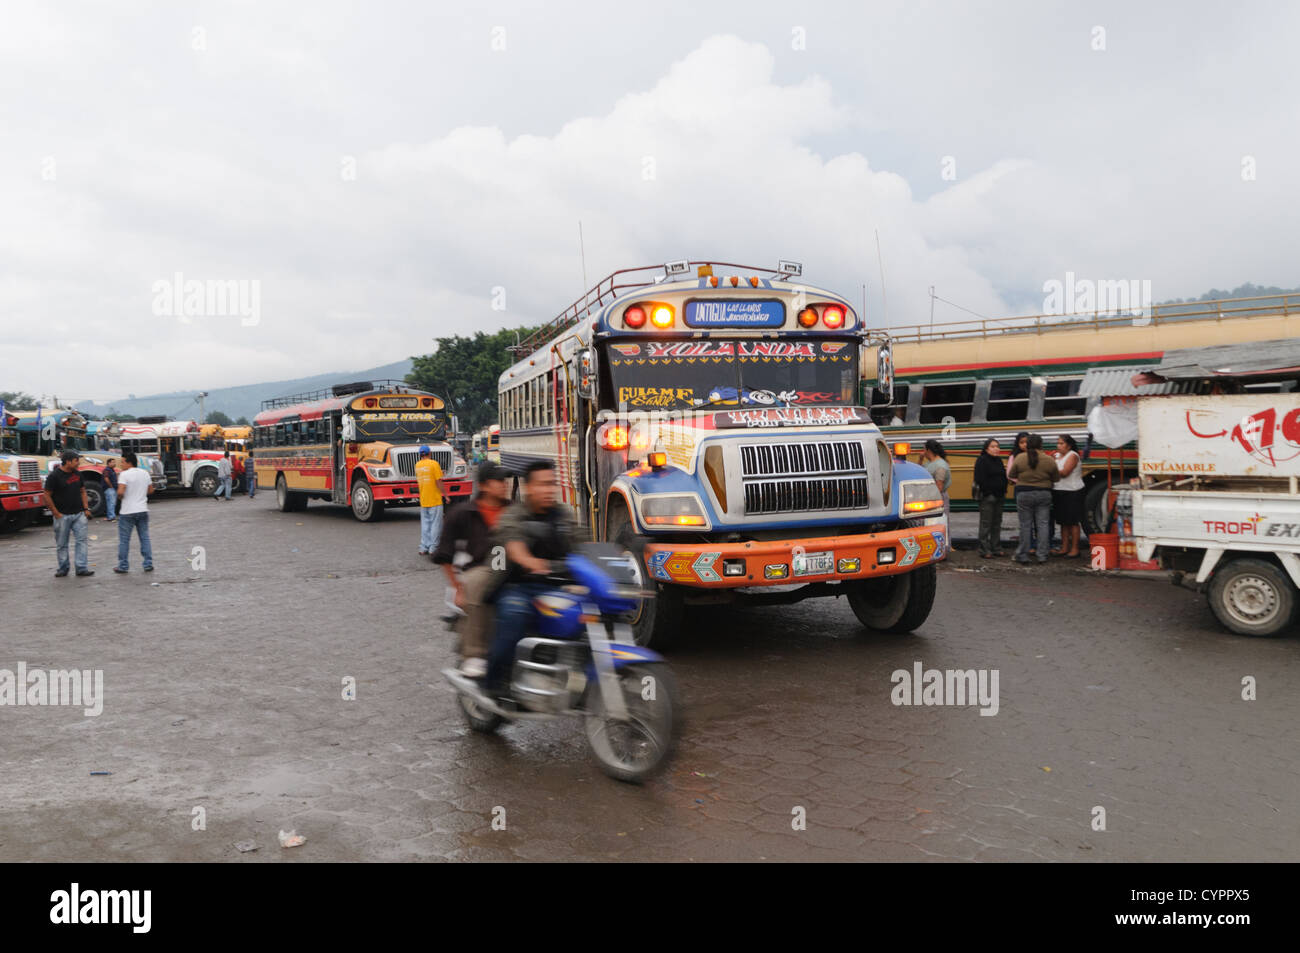 Huhn-Busse und ein Motorrad hinter dem Mercado Municipal (Stadtmarkt) in Antigua, Guatemala. Aus diesem umfangreichen zentralen Busbahnhof strahlenförmig der Routen in Guatemala. Oft bunt bemalt, die Huhn-Busse sind nachgerüsteten amerikanische Schulbusse und bieten ein günstiges Transportmittel im ganzen Land. Stockfoto